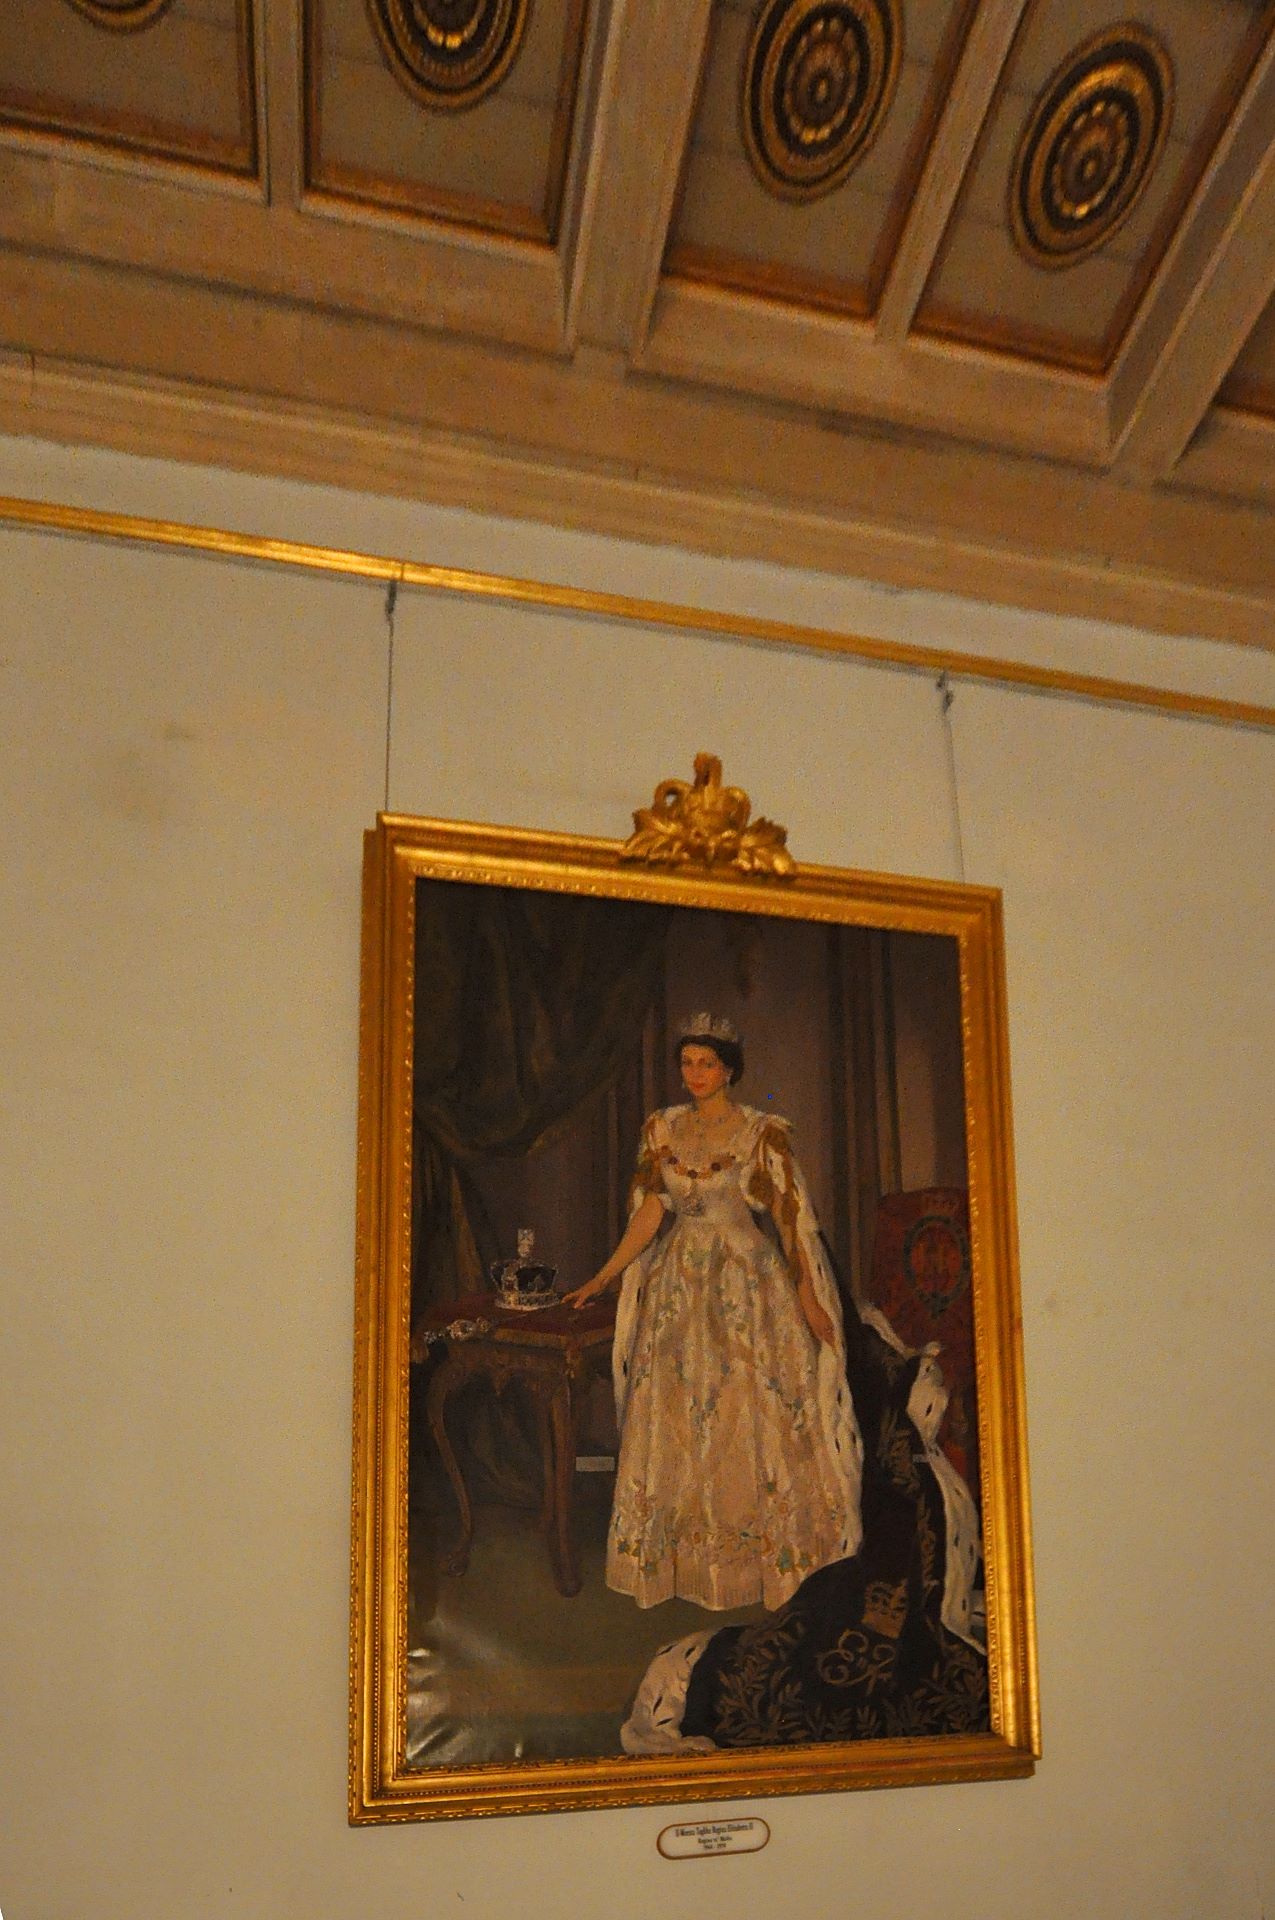 Als Queen Elisabeth II. den Thron bestieg war Malta noch Kronkolonie